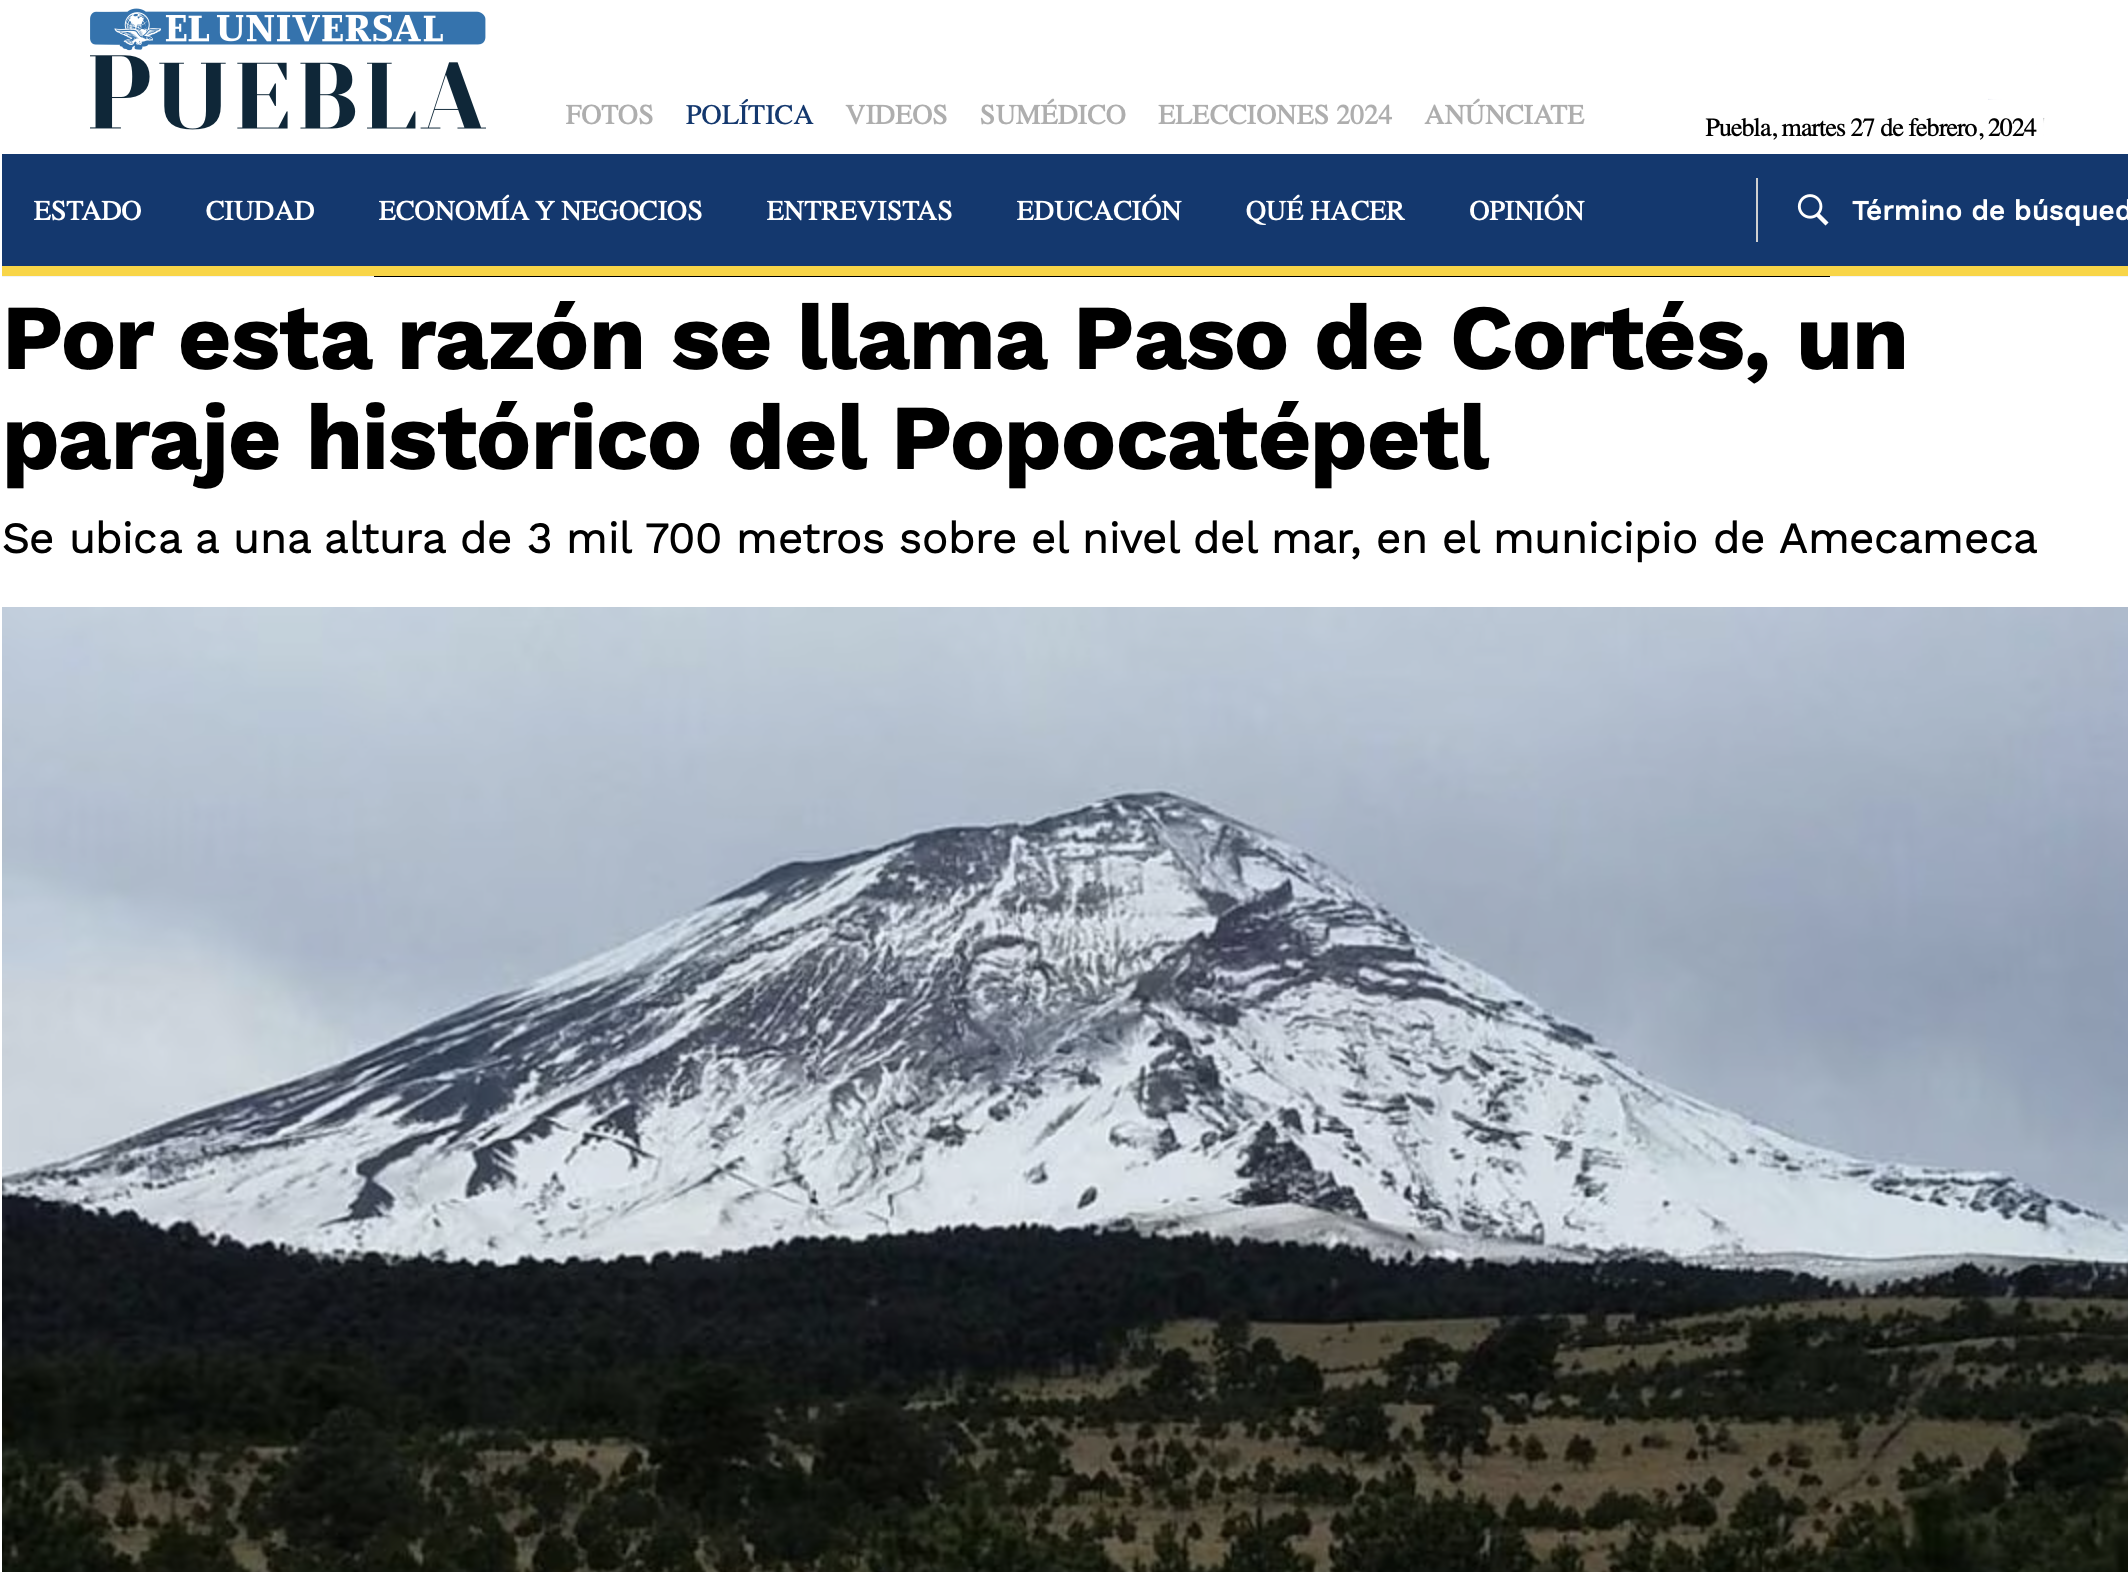 Por esta razón se llama Paso de Cortés, un paraje histórico del Popocatépetl